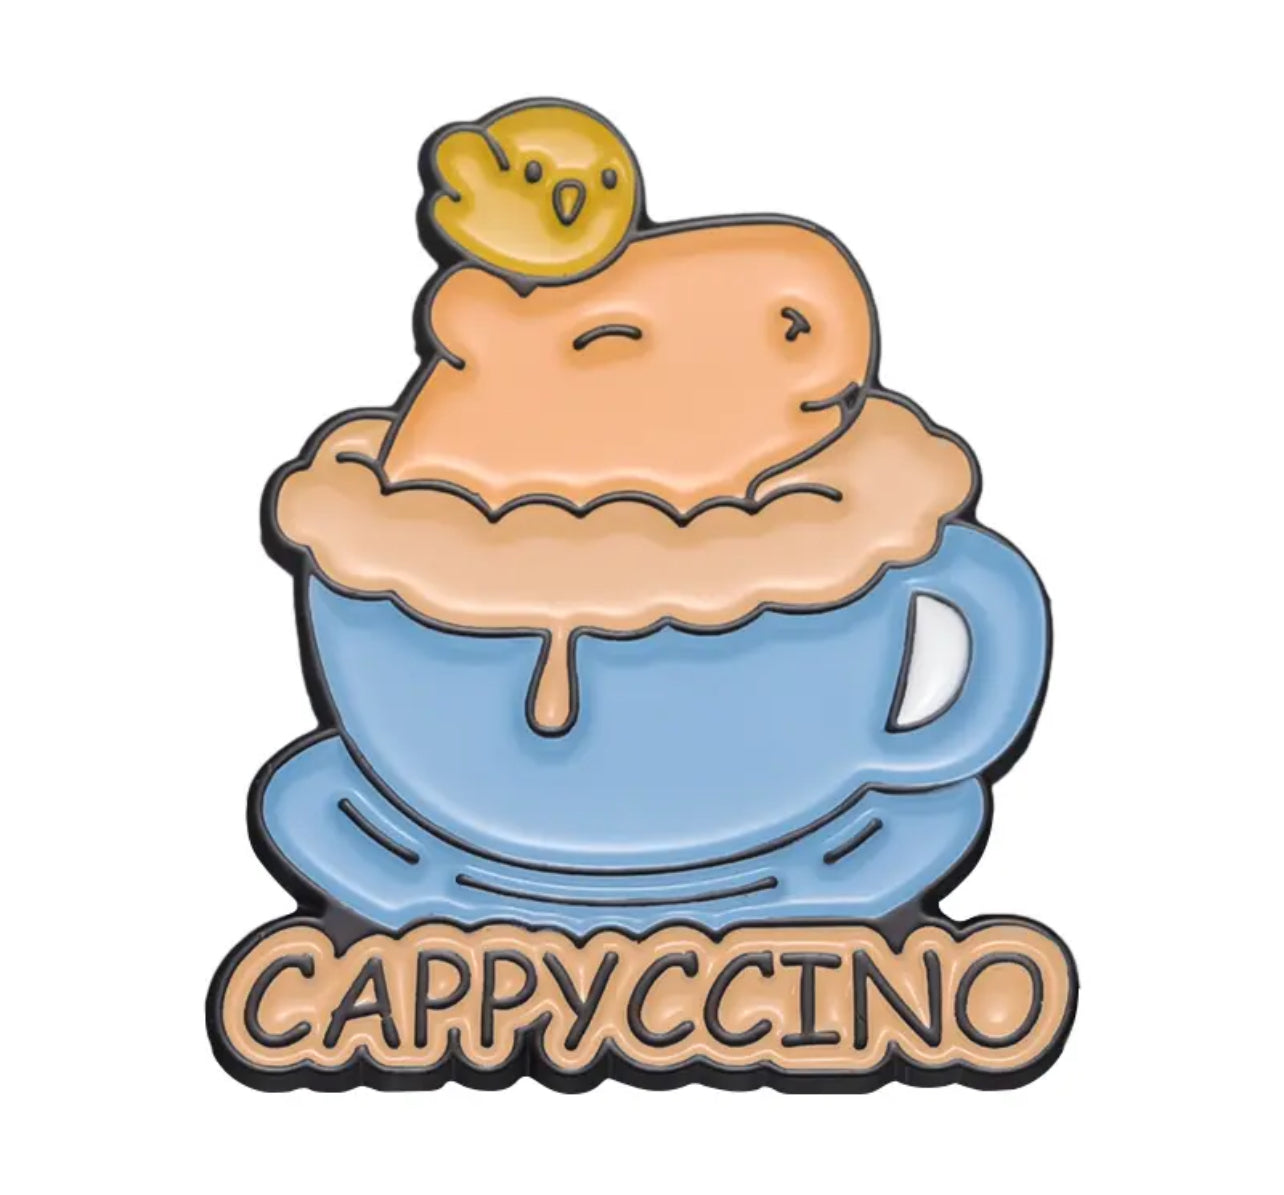 Cappyccino